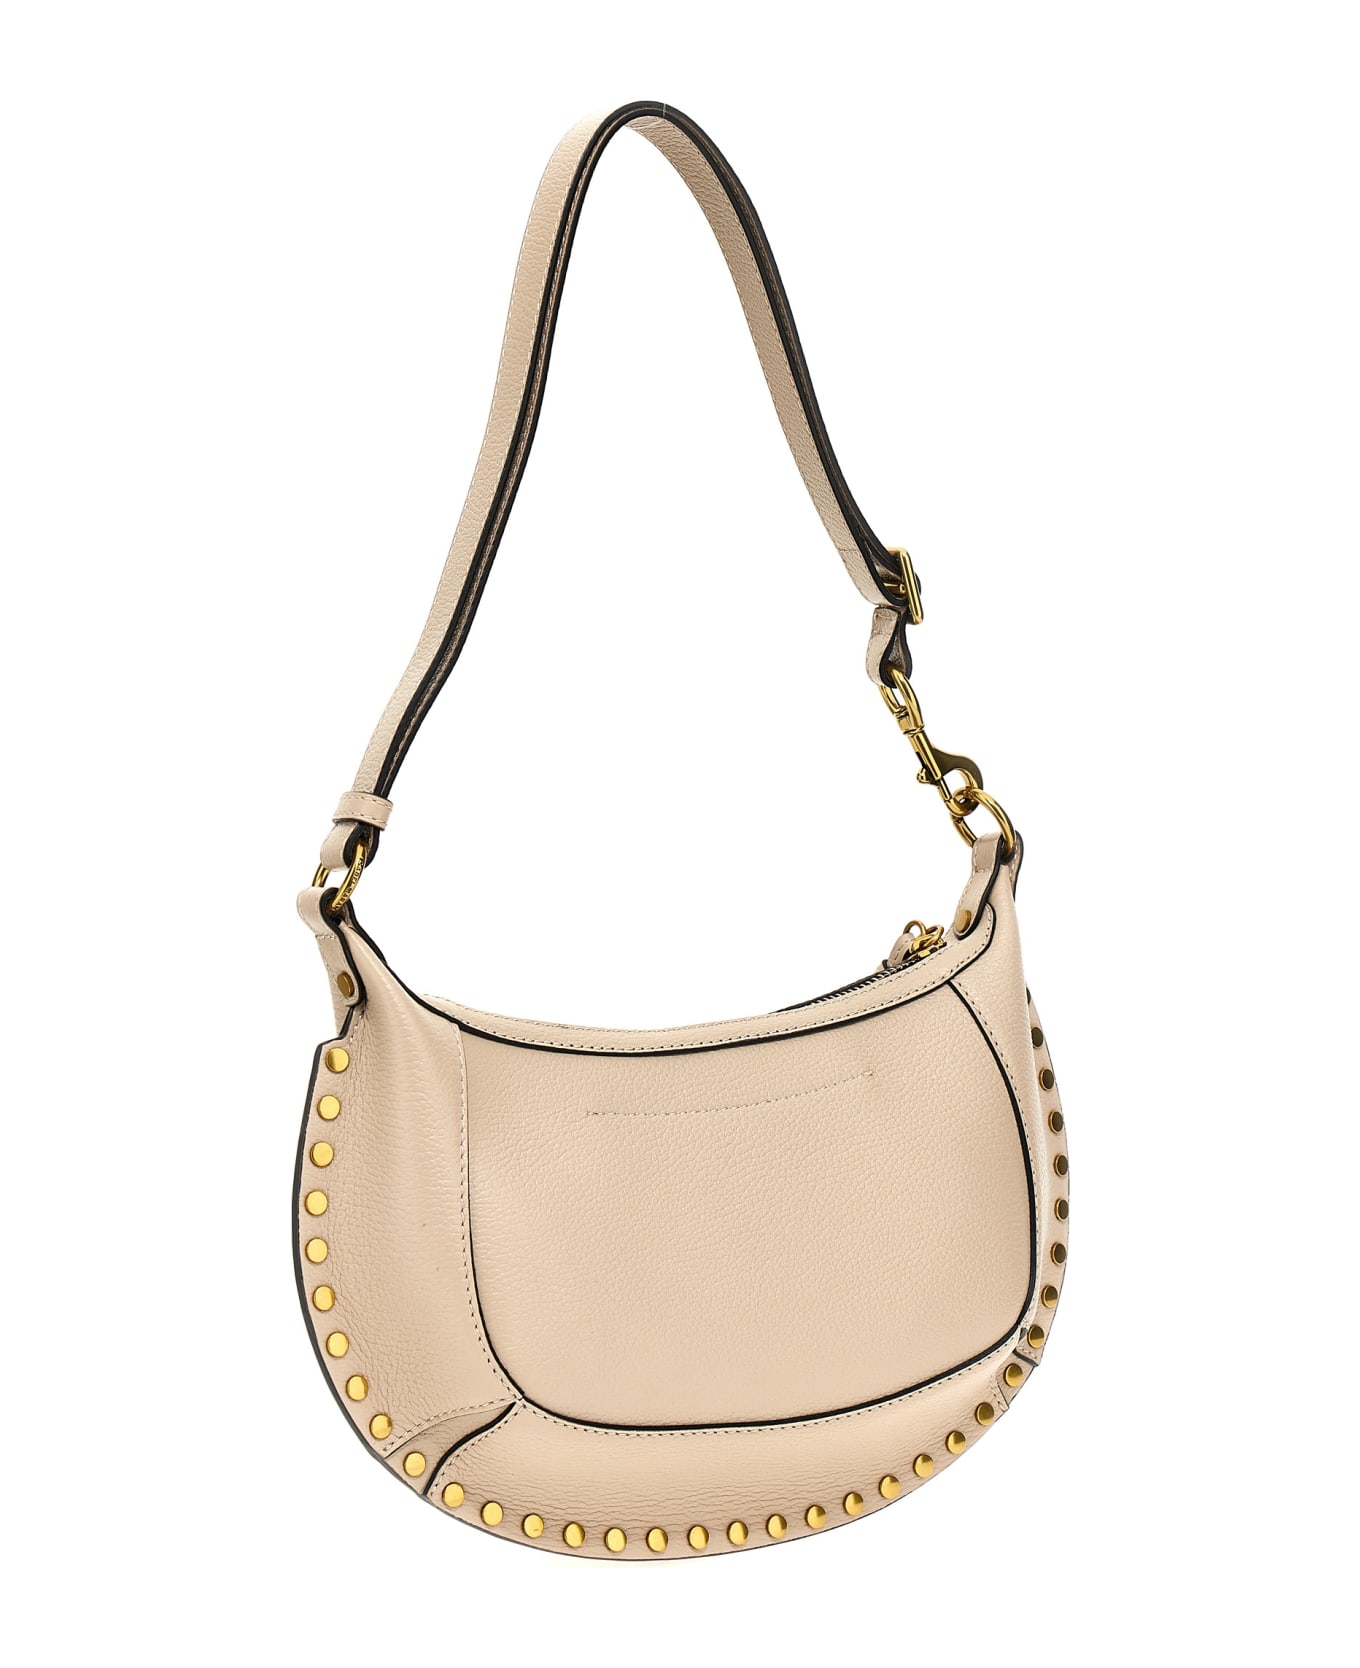 Isabel Marant Shoulder Bag With Studs Detailing In Leather - Beige